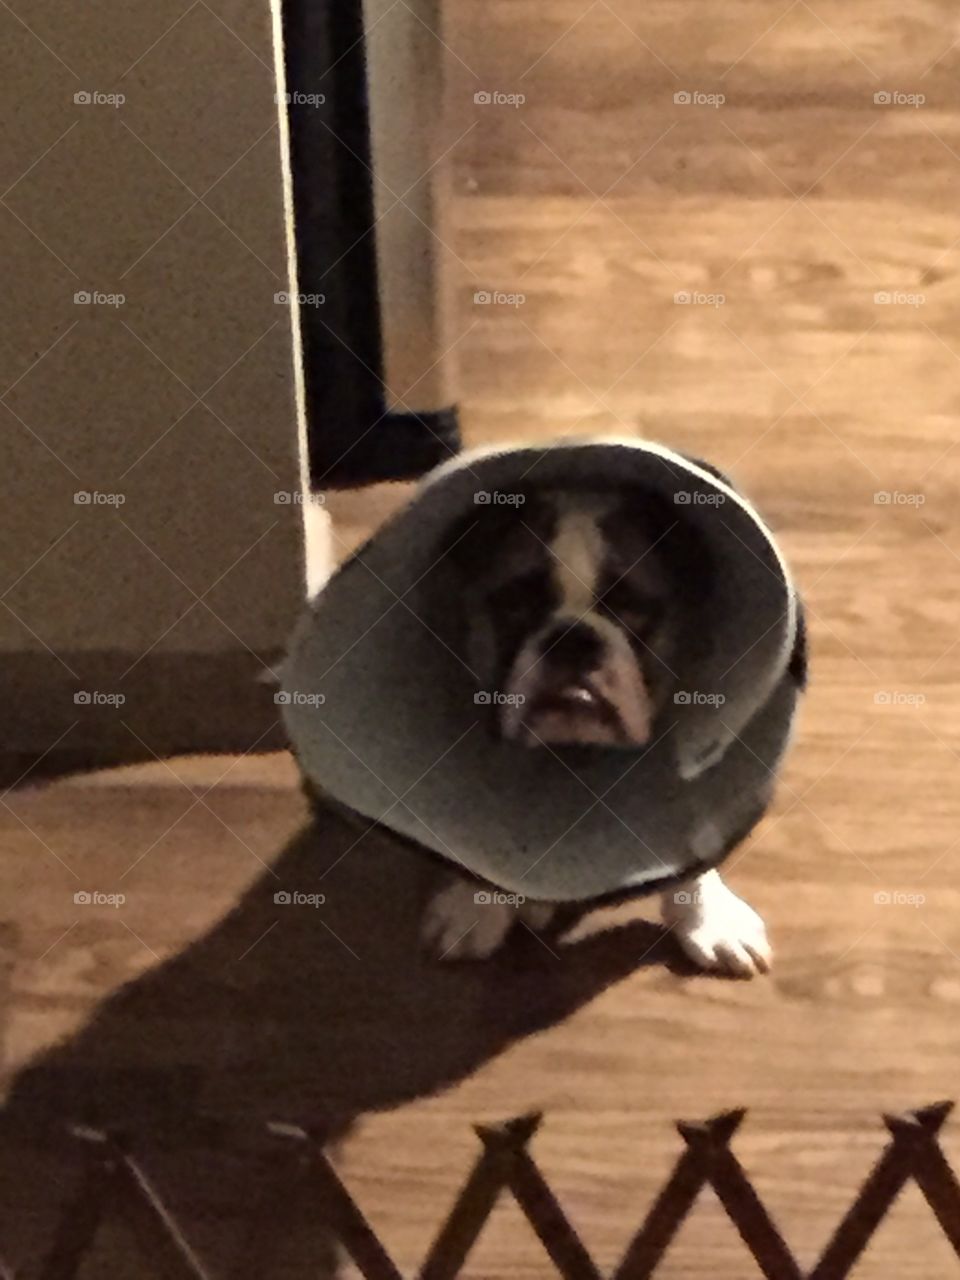 Sad cone head 